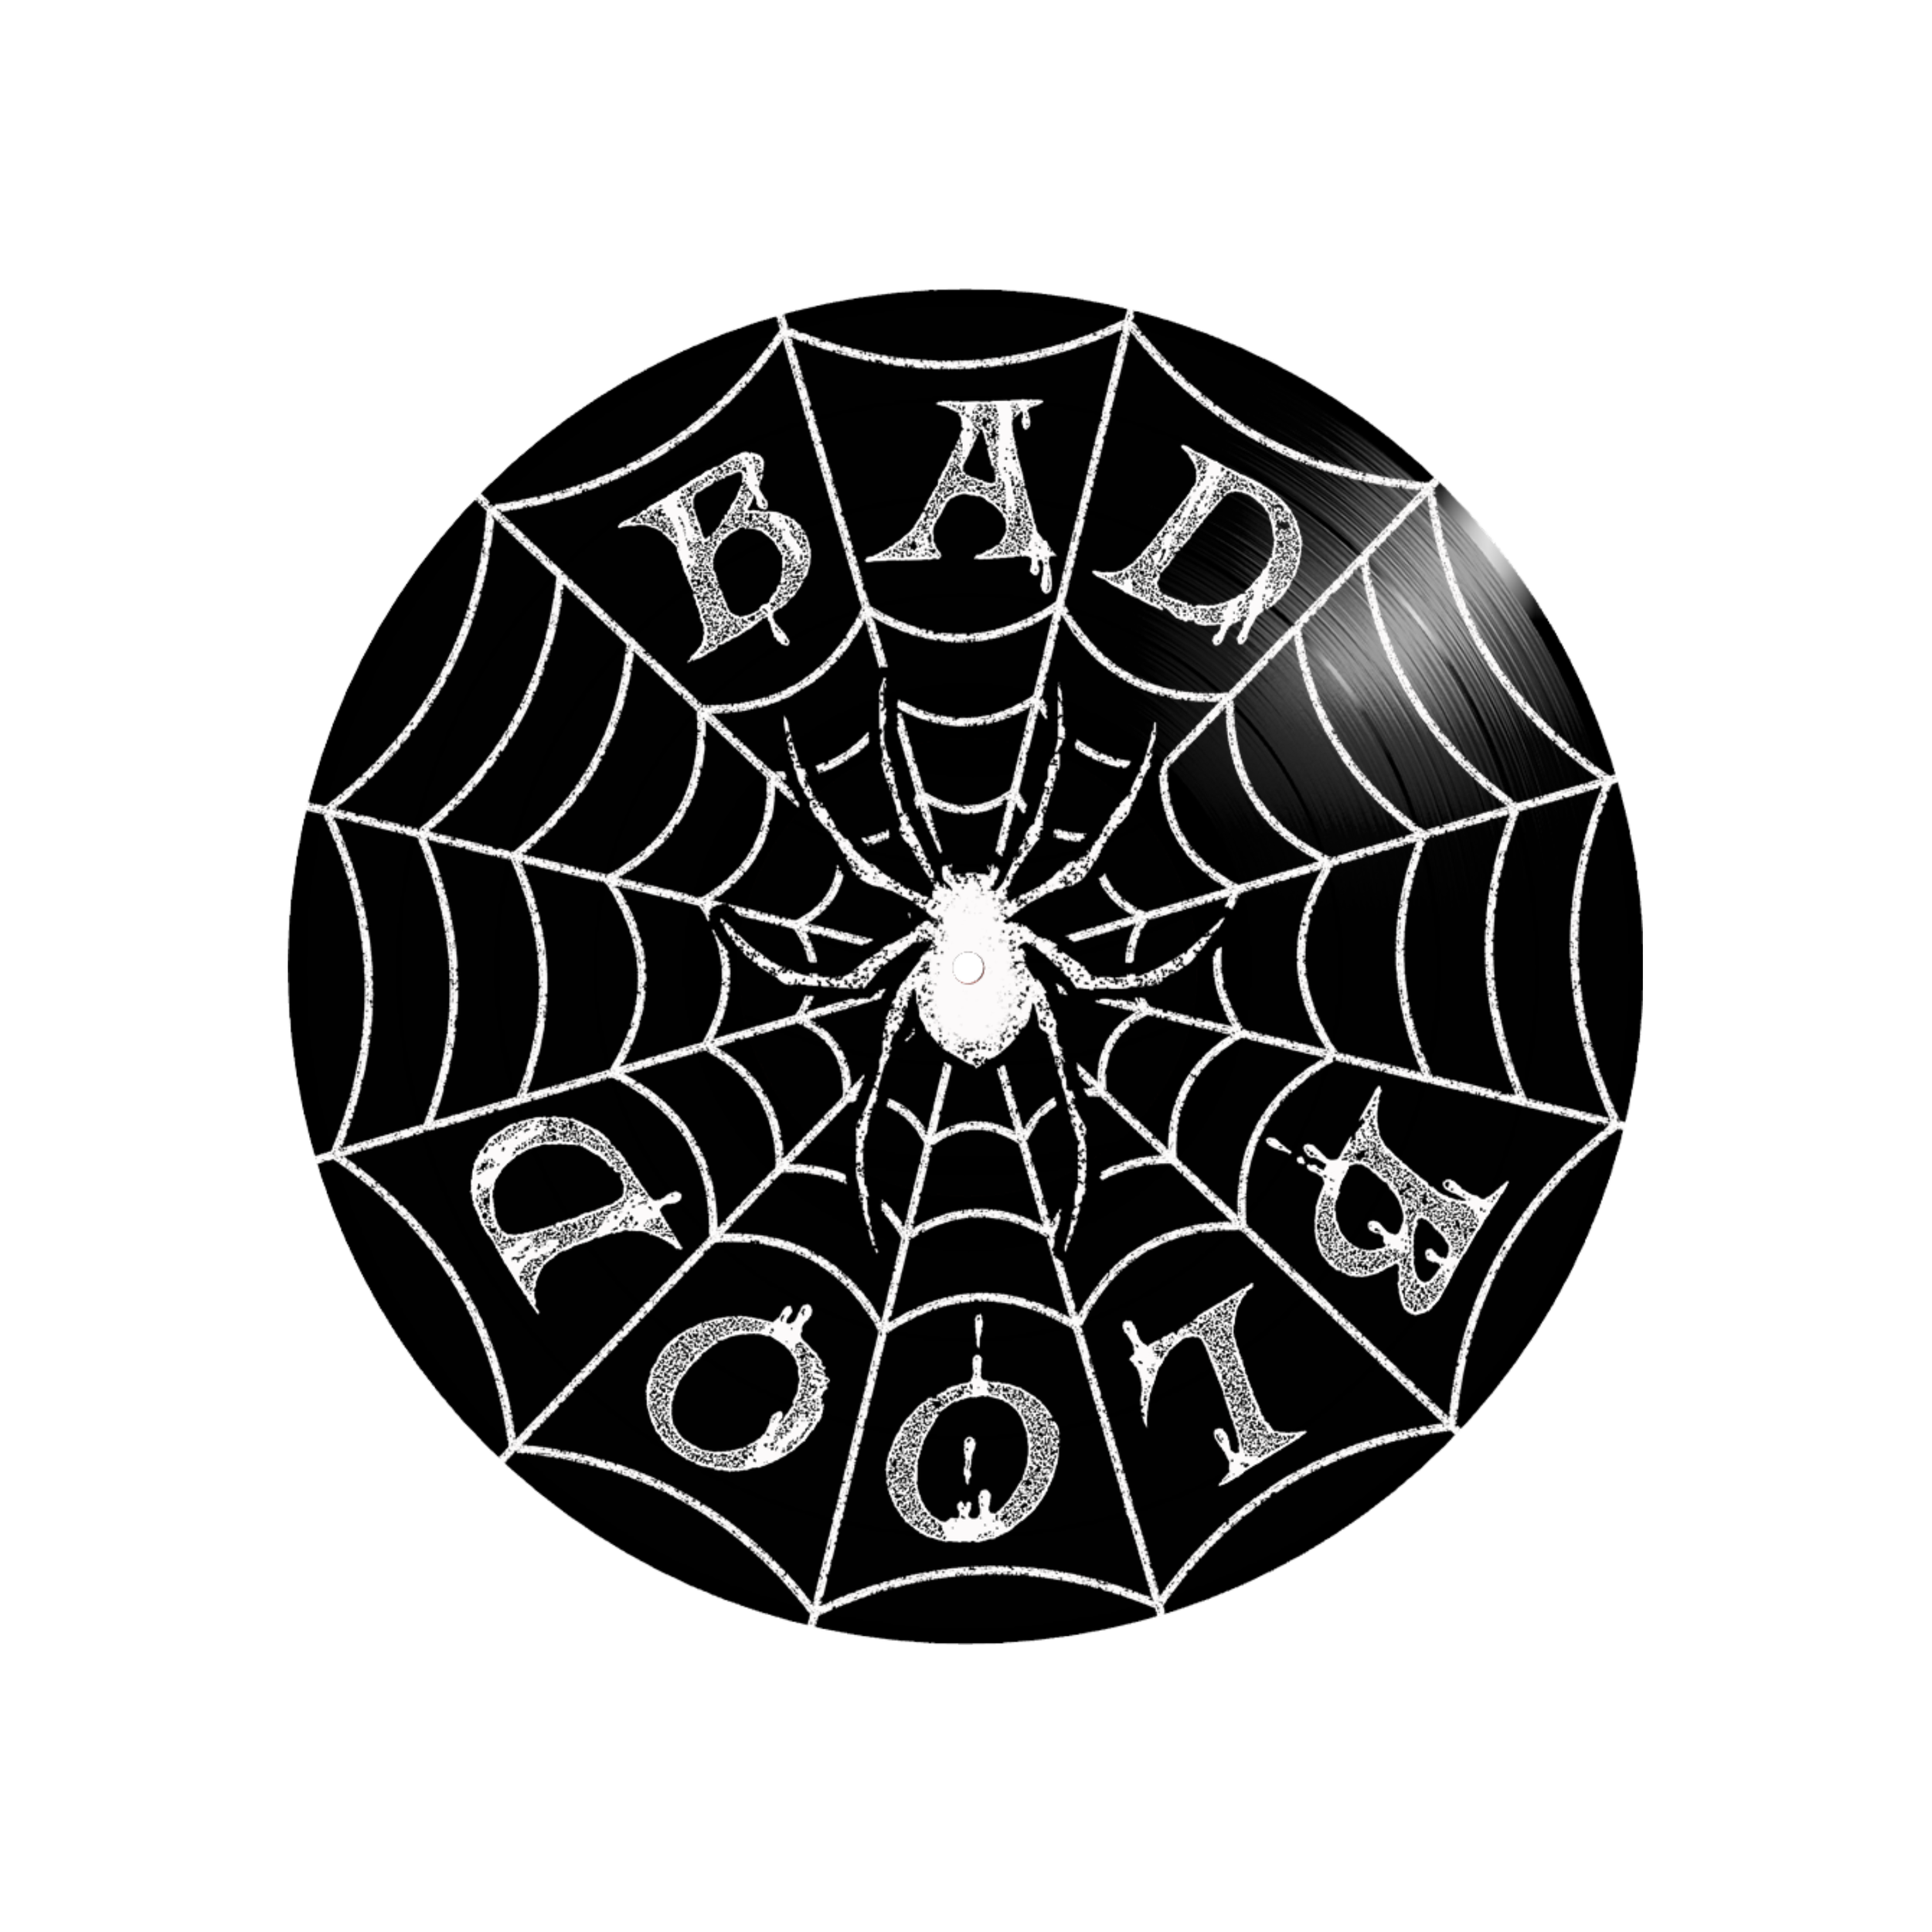 Bad Blood - The Bad Kind Decides - Vinyl - B Side.png